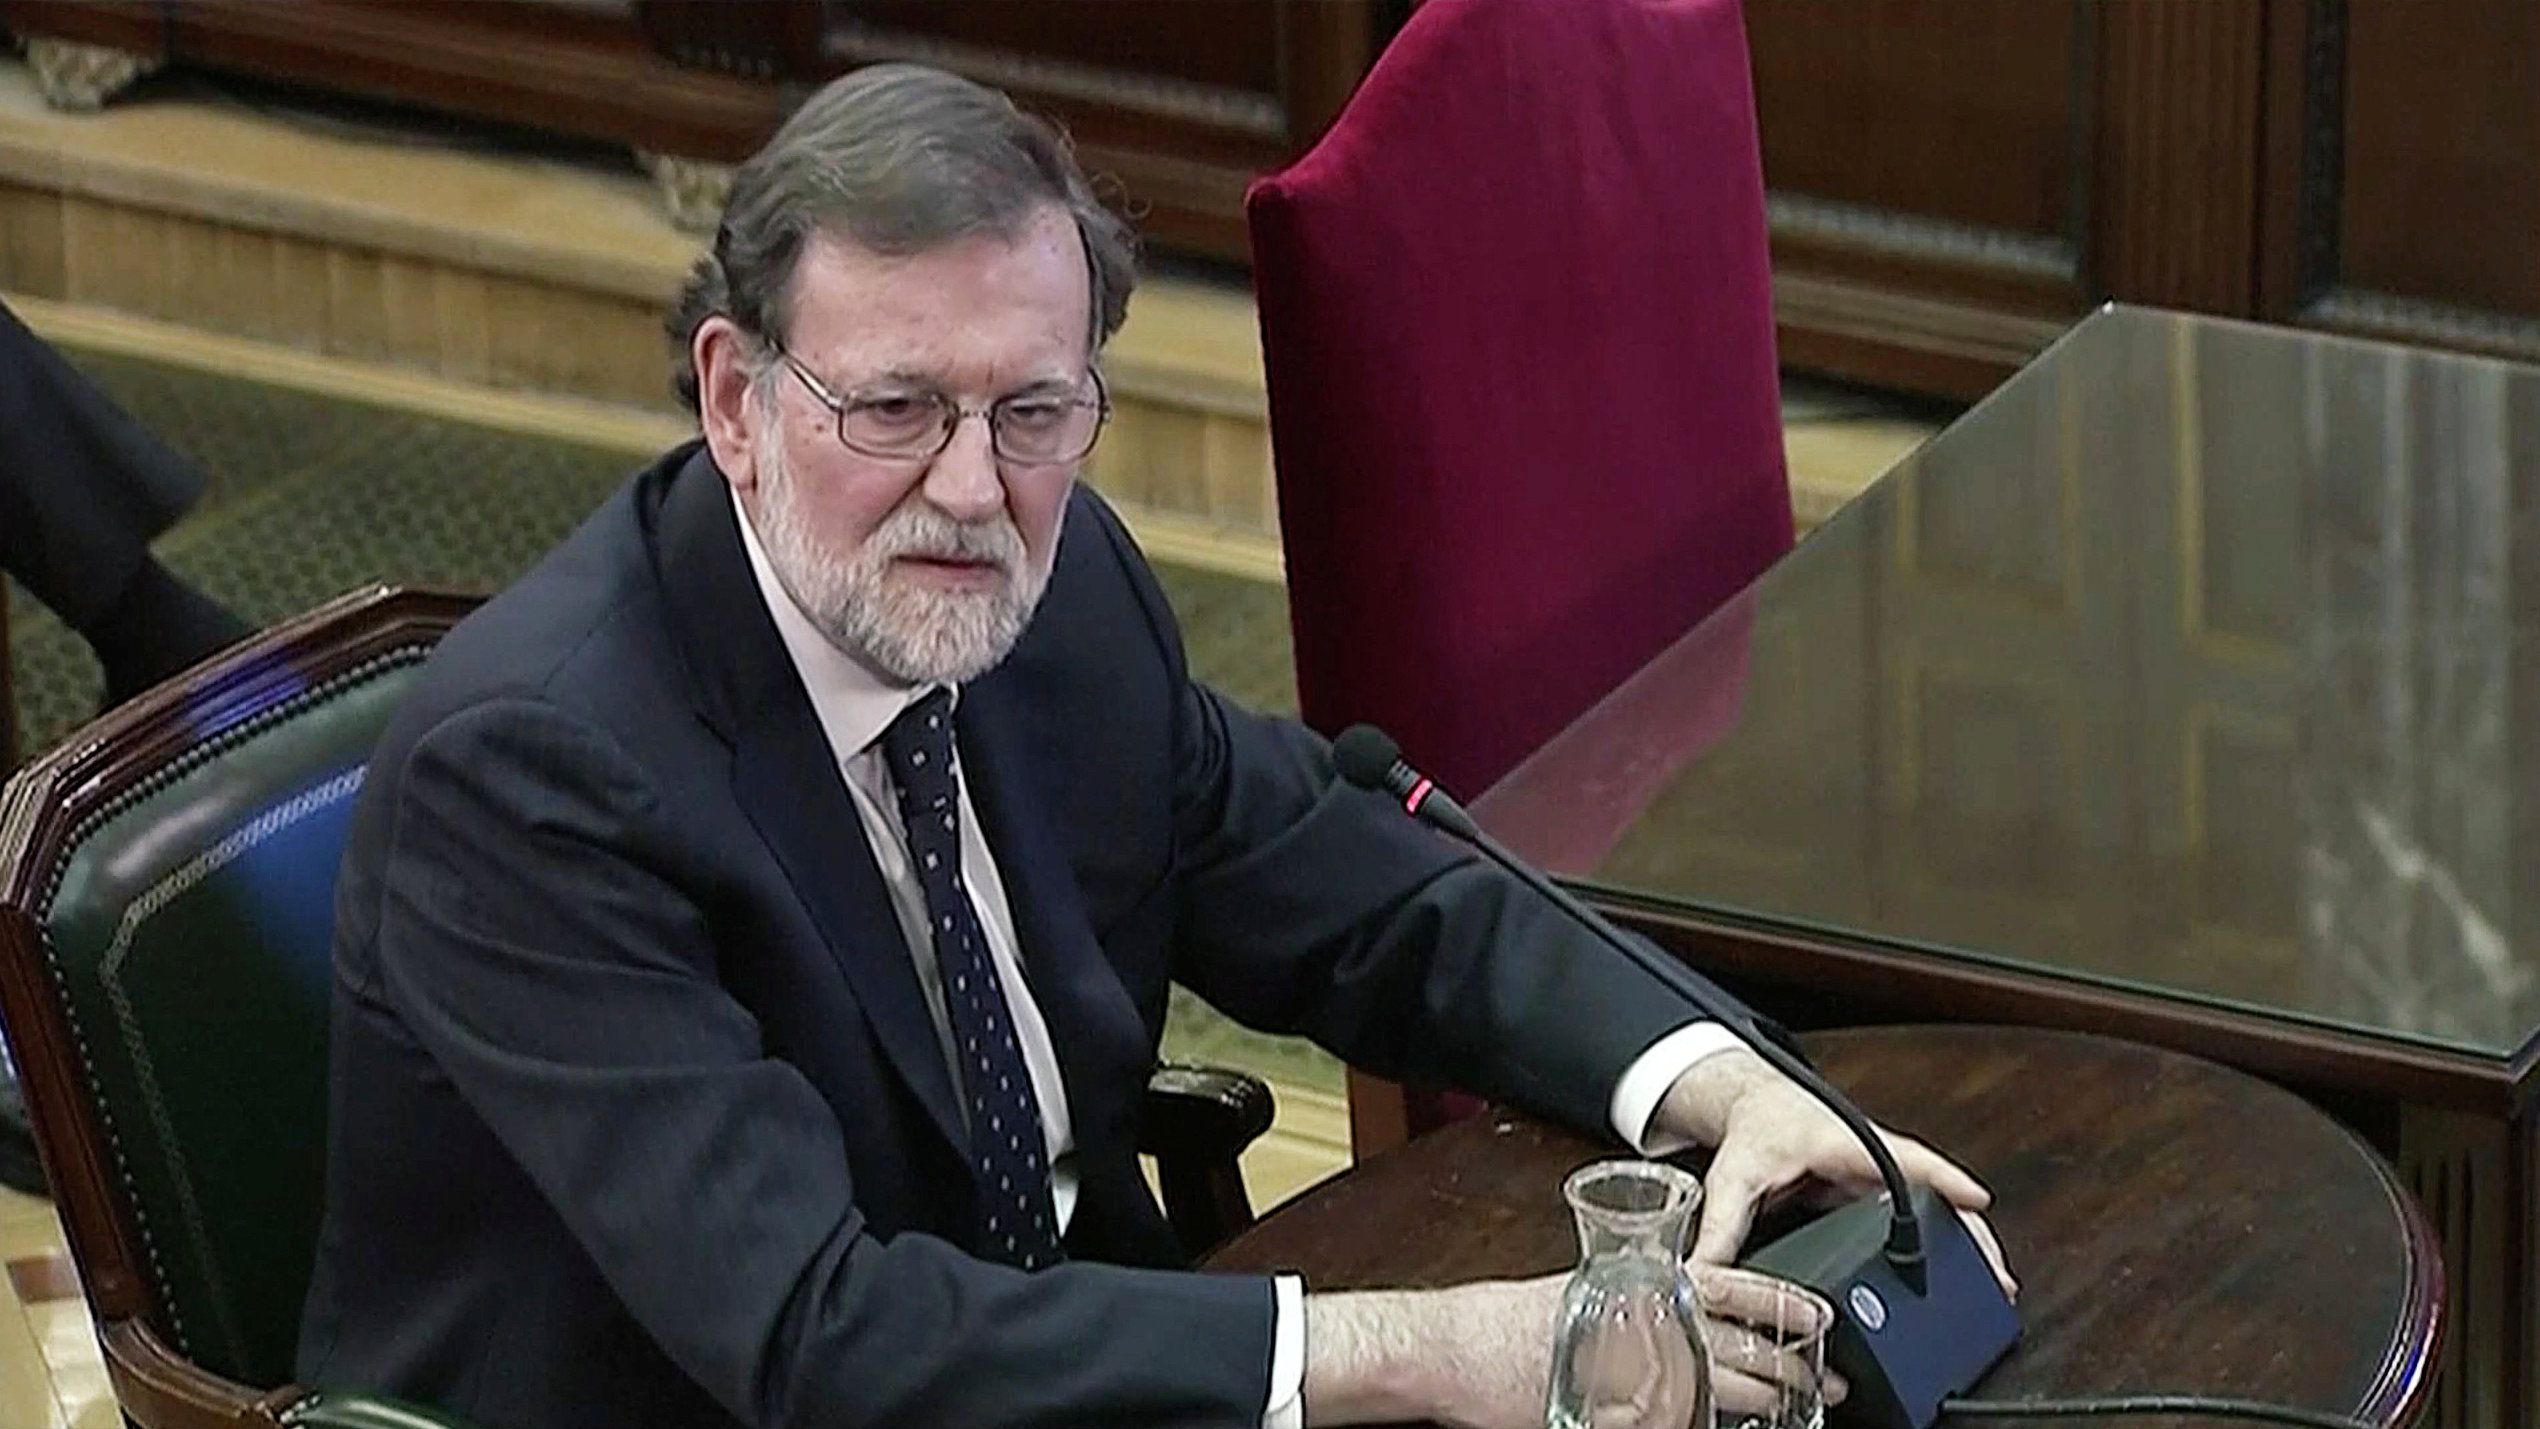 El ex presidente Mariano Rajoy declaró como testigo durante el juicio a los líderes separatistas catalanes, el 27 de febrero de 2019 (REUTERS/Reuters TV)